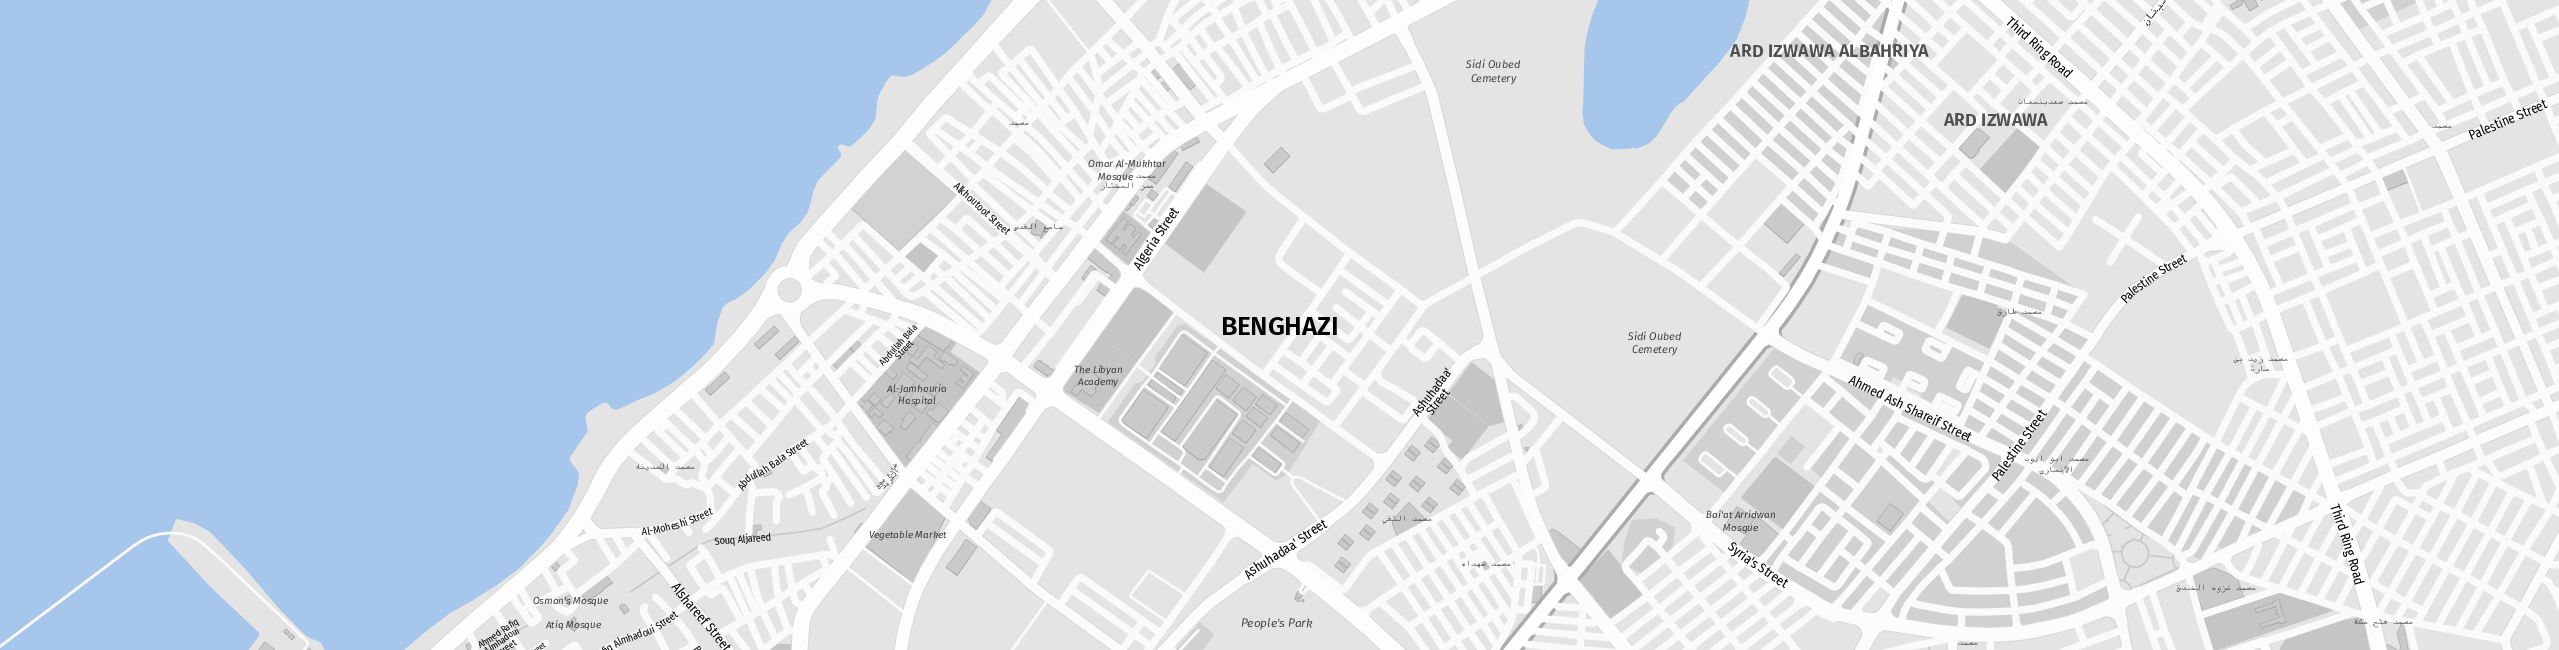 Stadtplan Benghazi zum Downloaden.